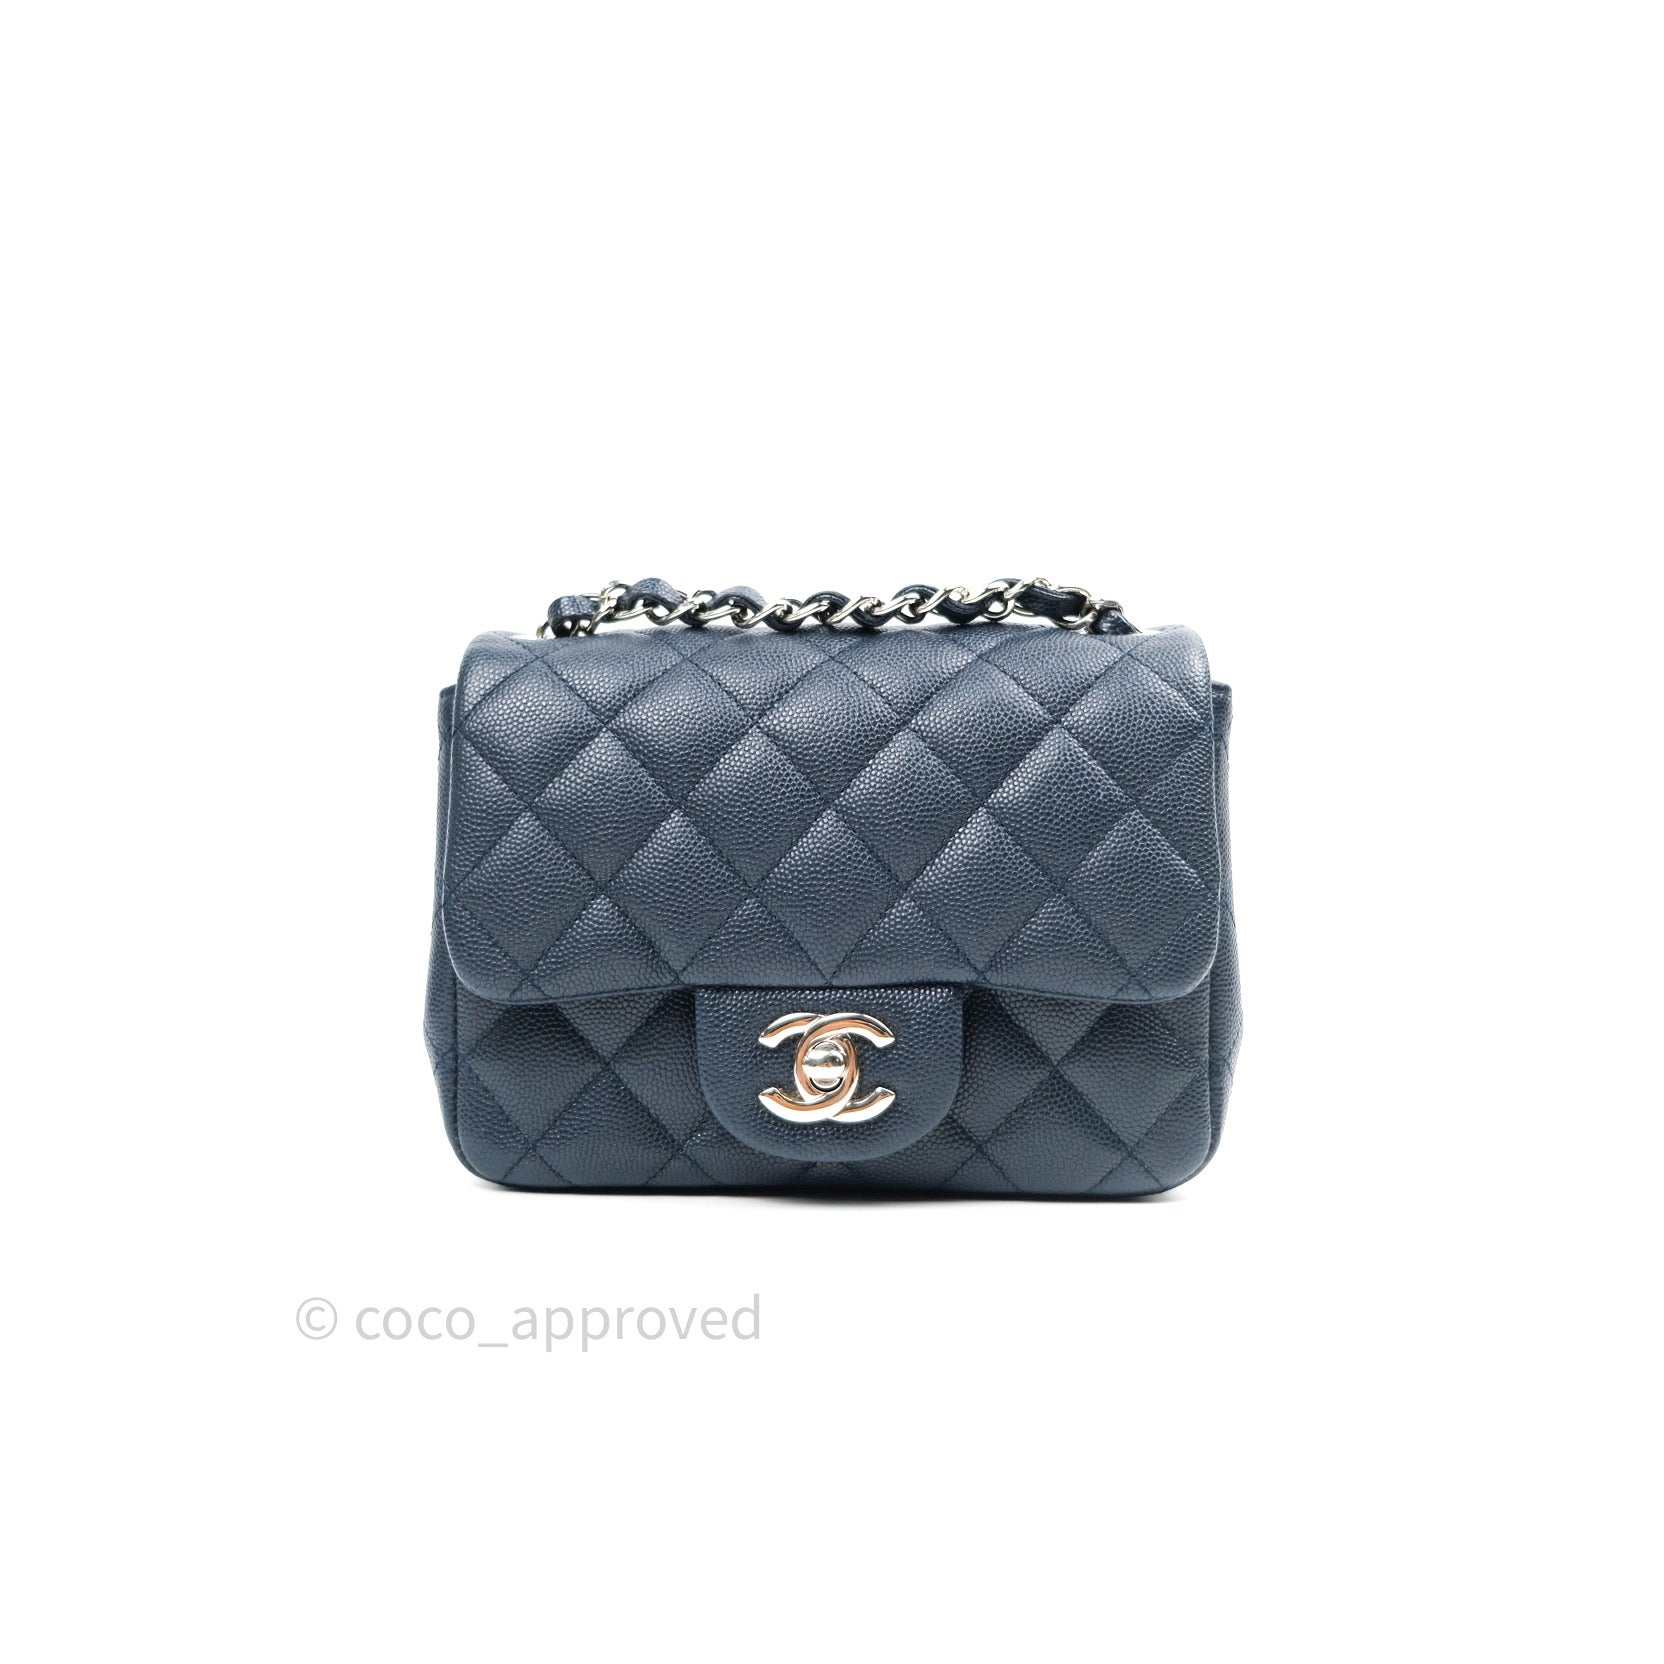 Chanel Mini Square Bag